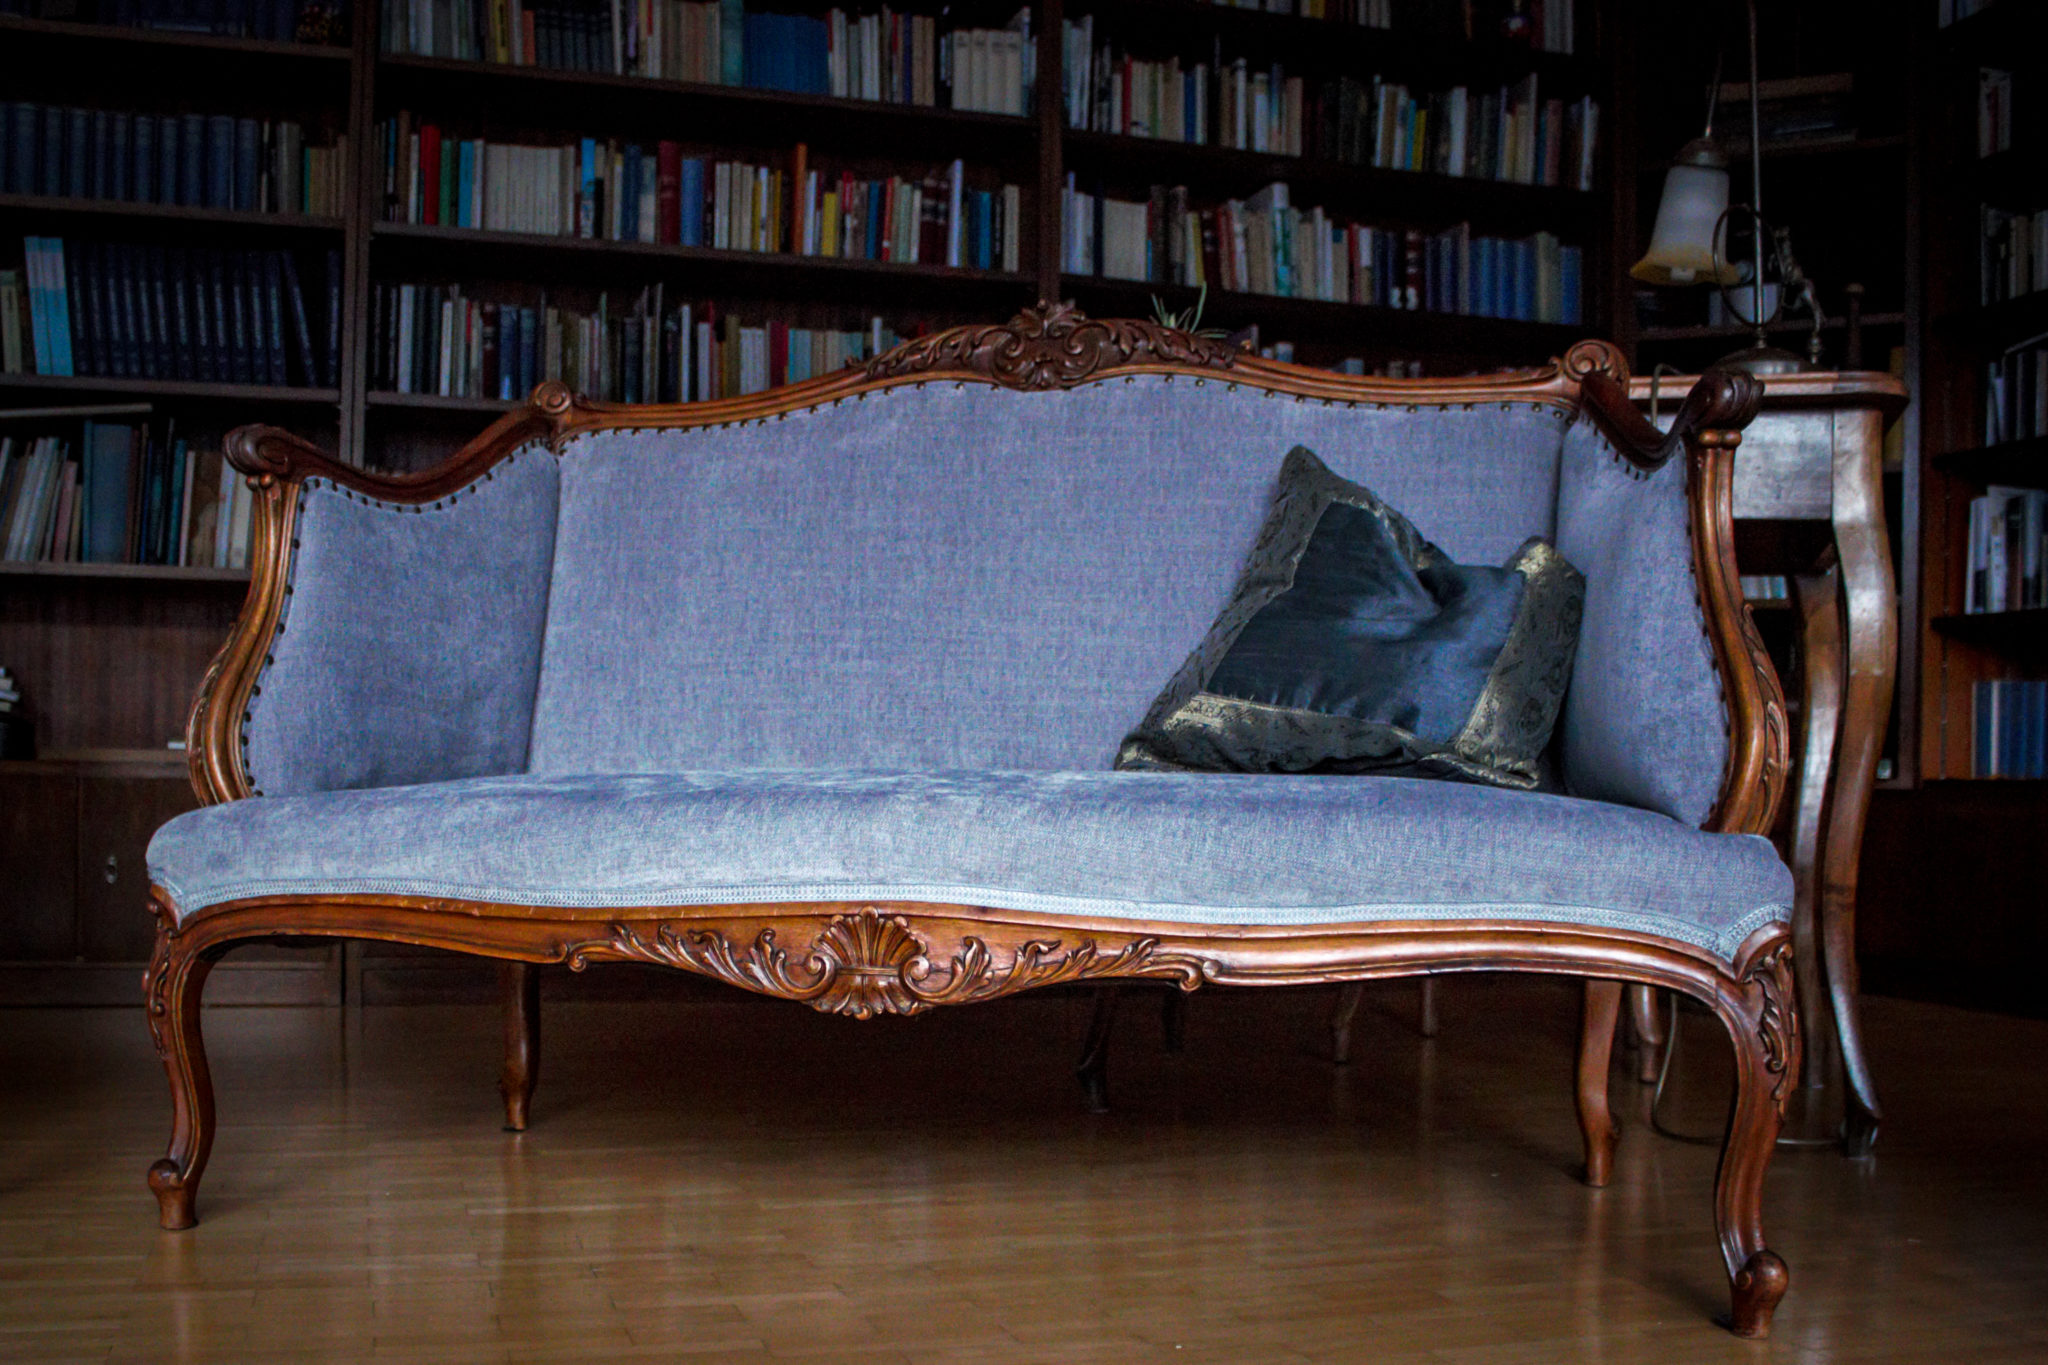 Stilmöbel Sofa komplett neu aufgearbeitet und gepolstert. Polster, reparatur, antik, alt, stühle sessel sofa